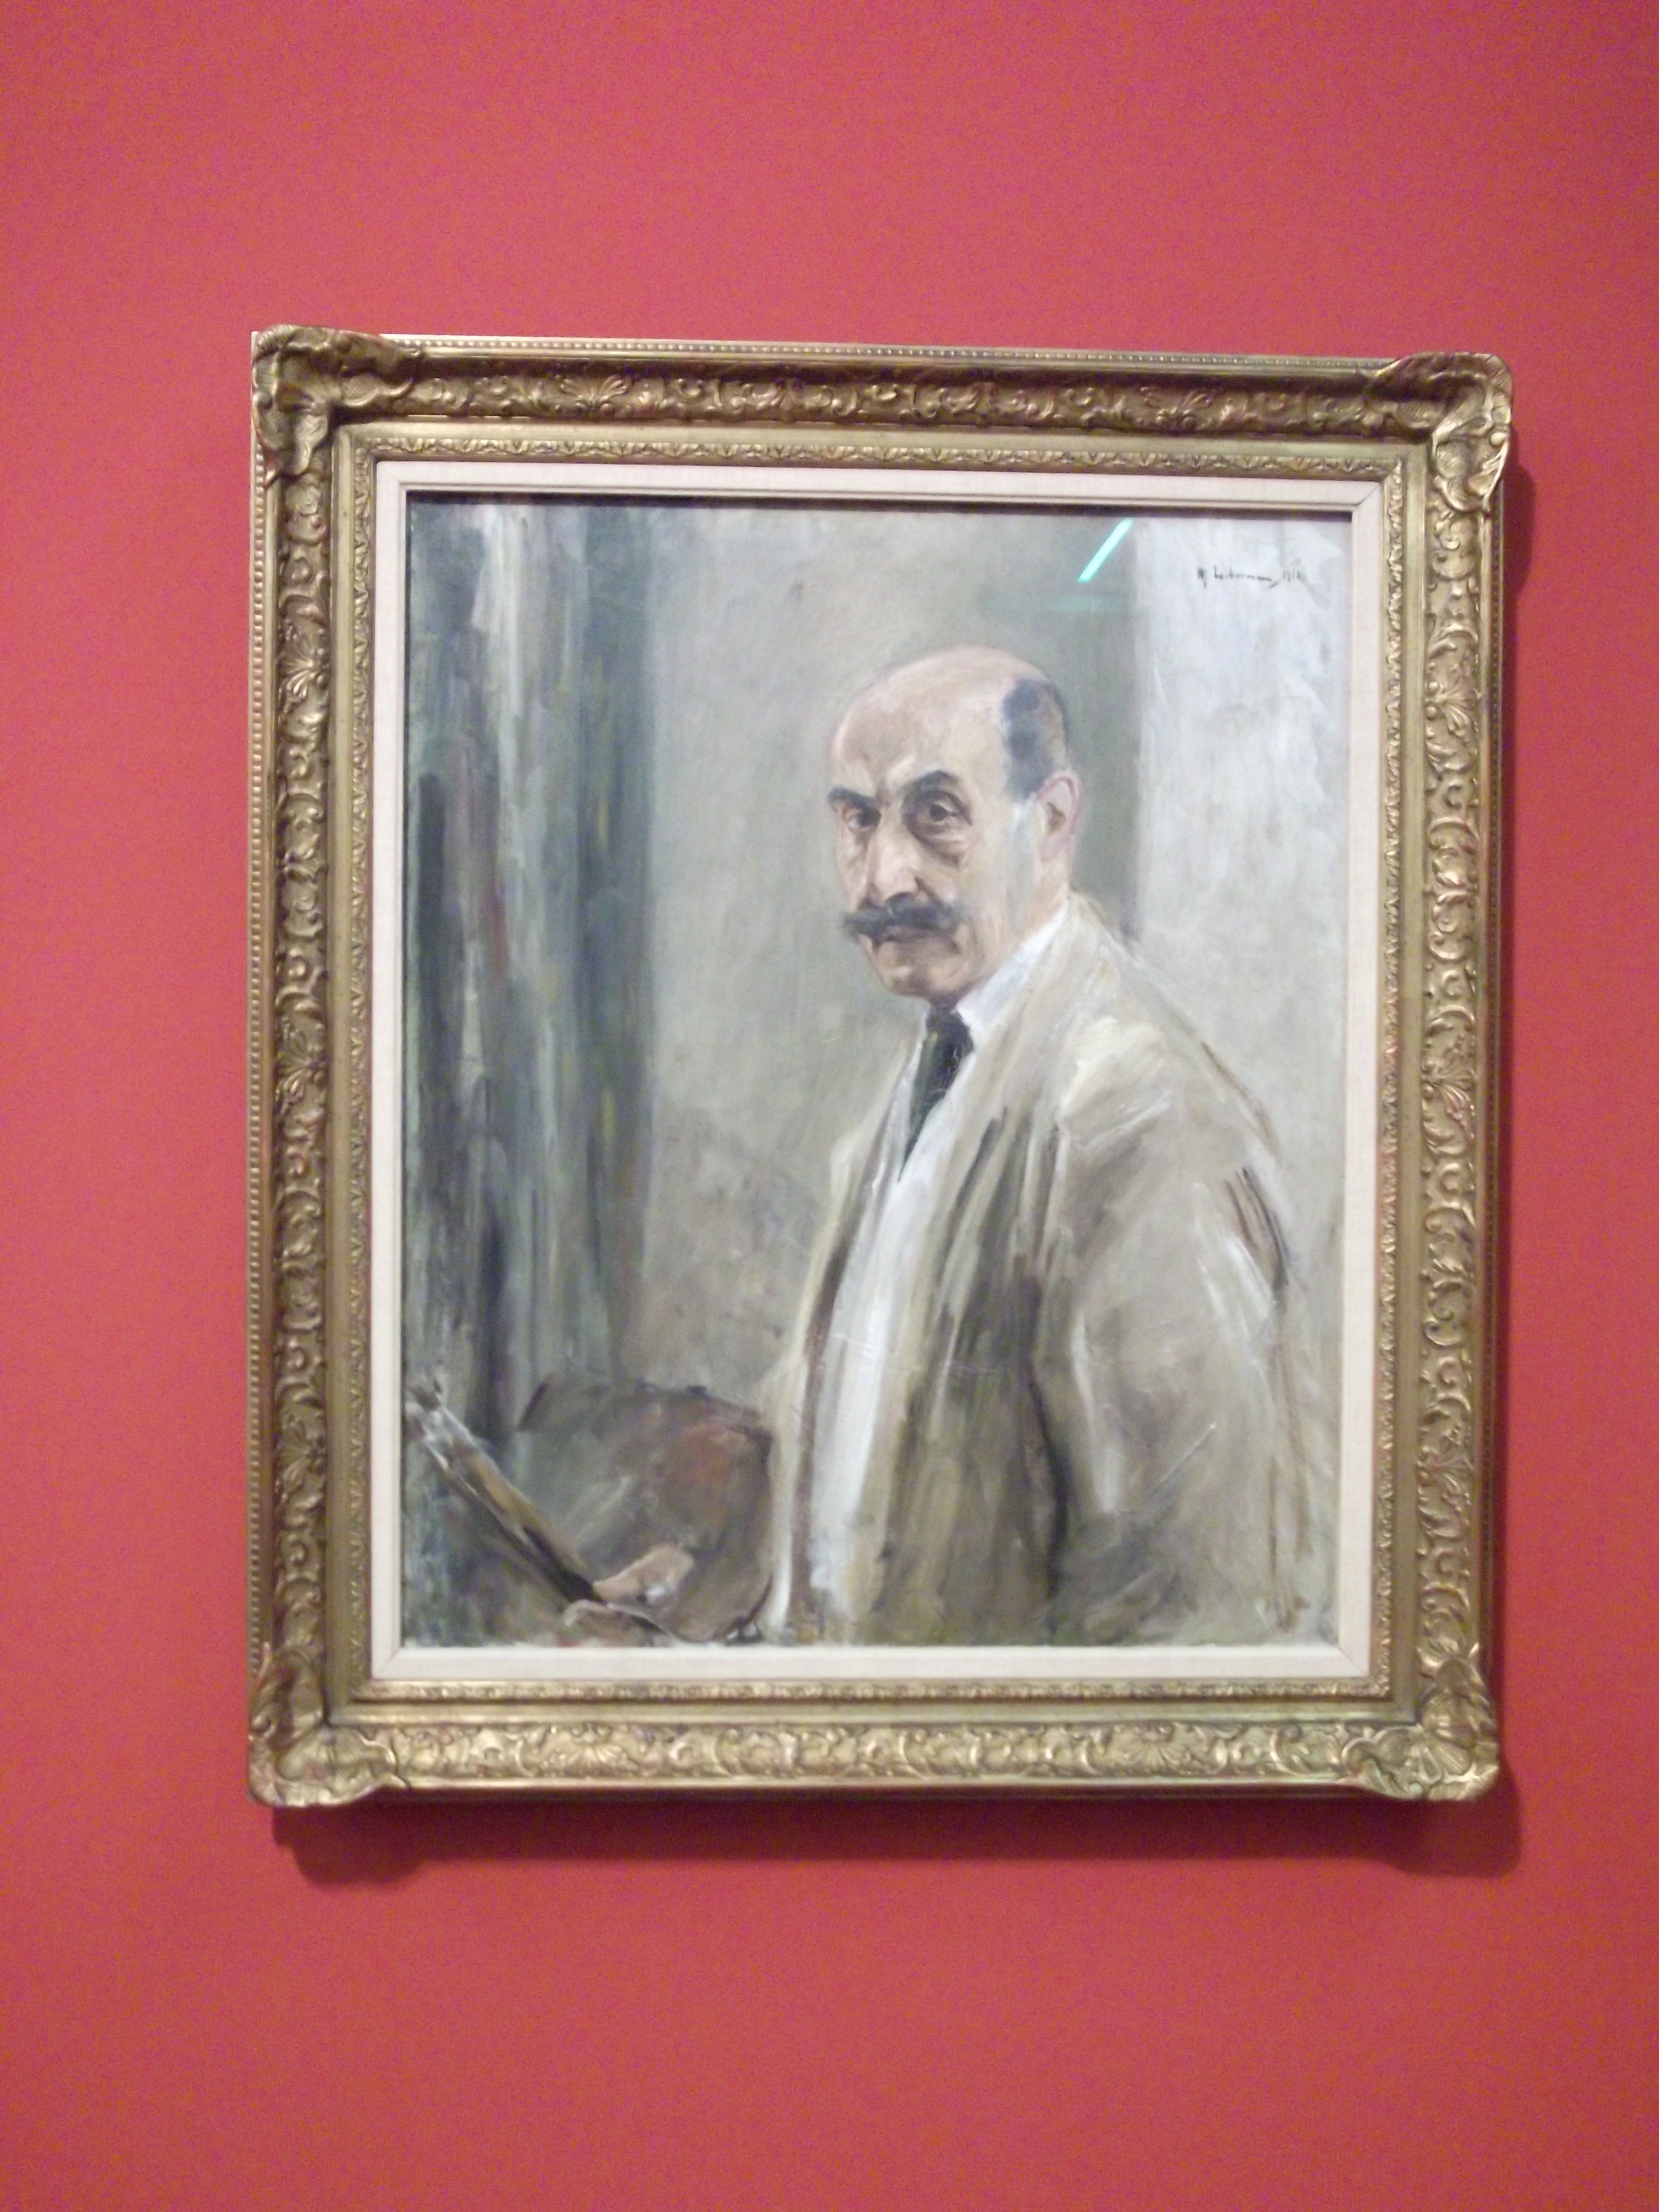 Selbstbildnis von dem Maler Max Liebermann aus dem Jahr 1913